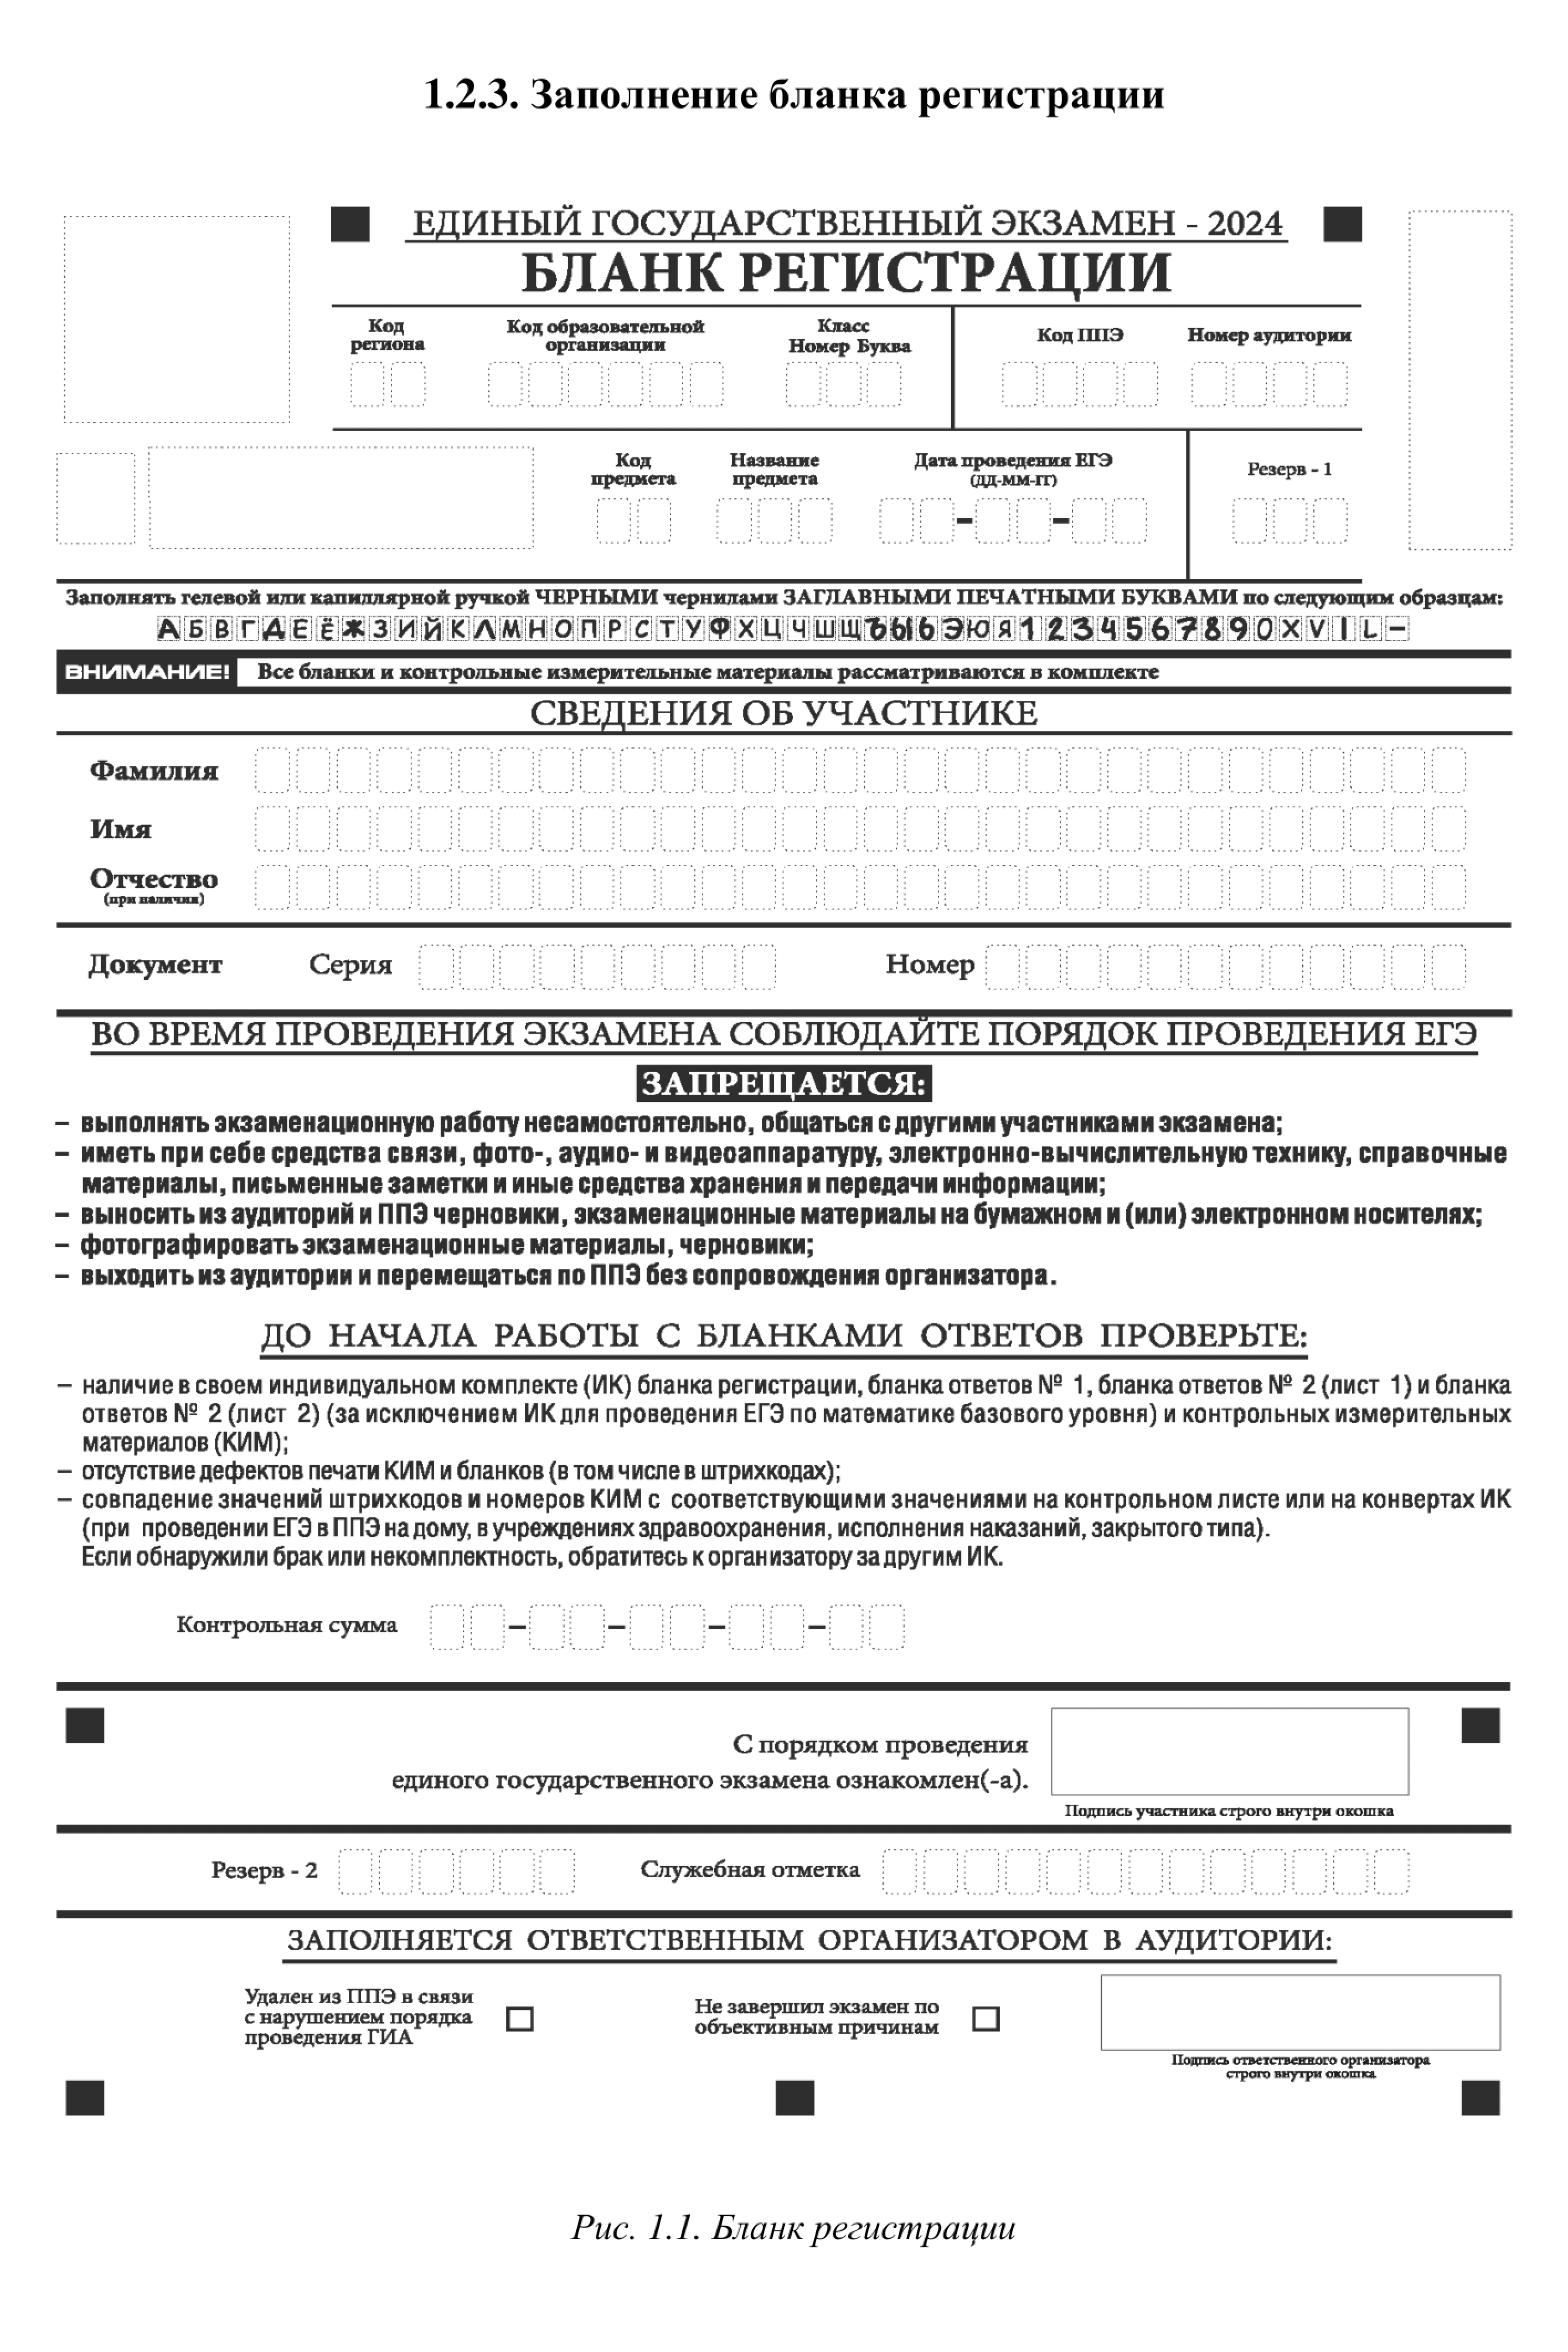 Бланк регистрации. Источник: obrnadzor.gov.ru